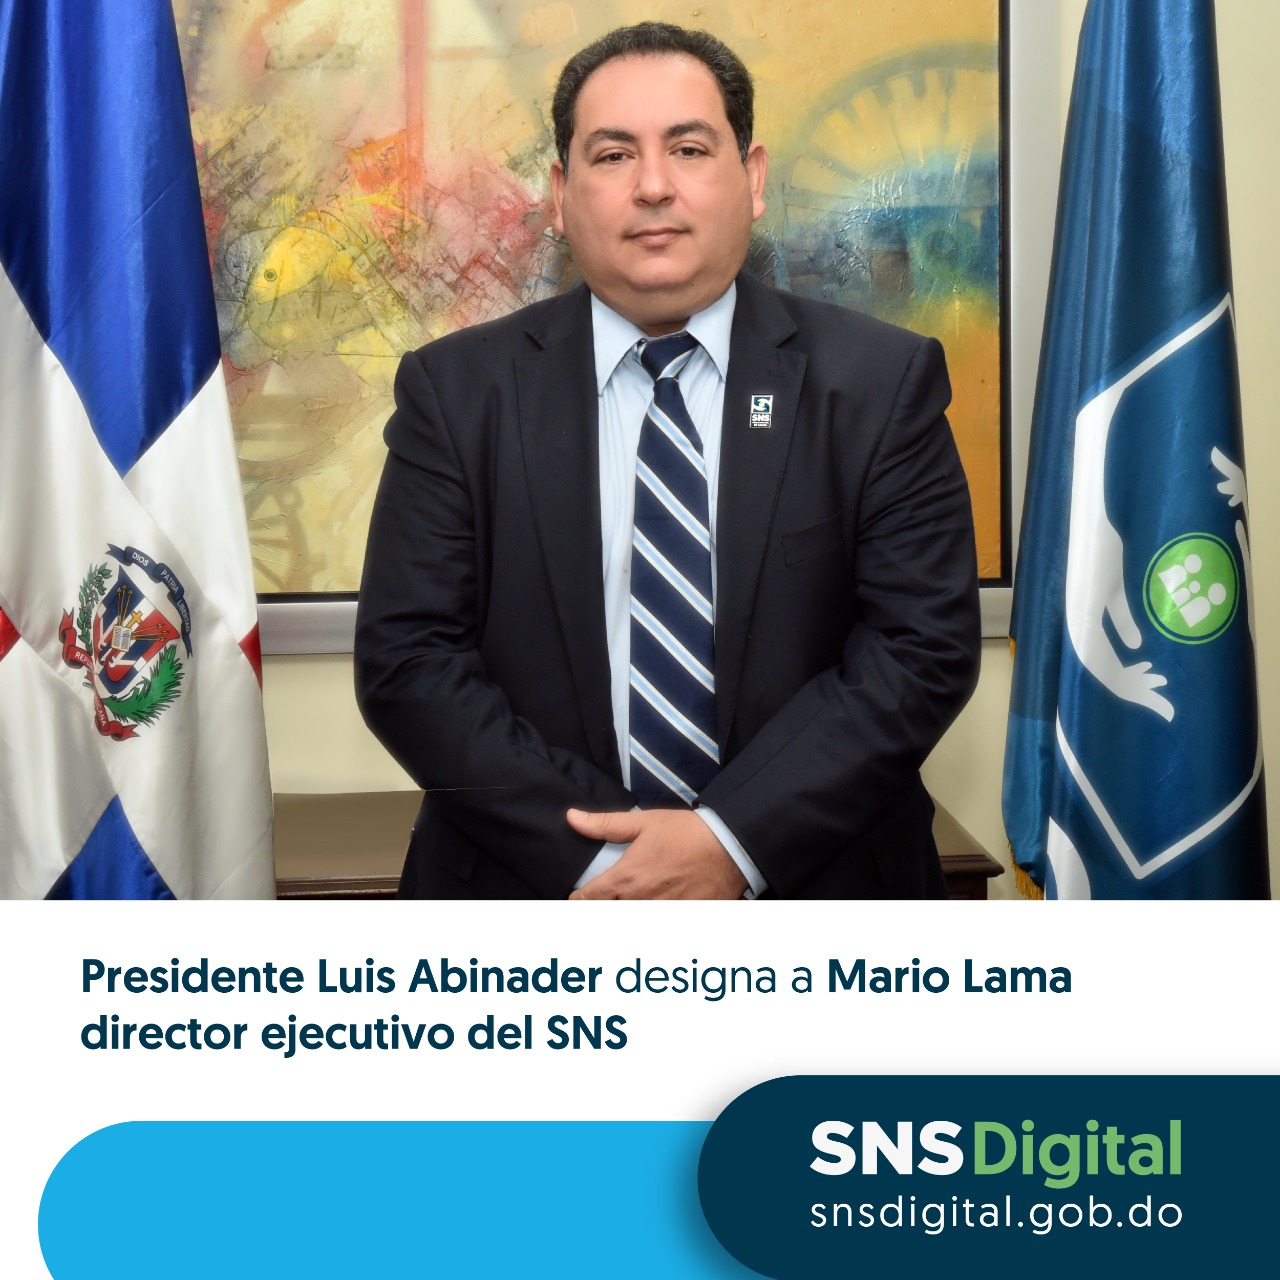 You are currently viewing Presidente Luis Abinader designa a Mario Lama director ejecutivo del SNS